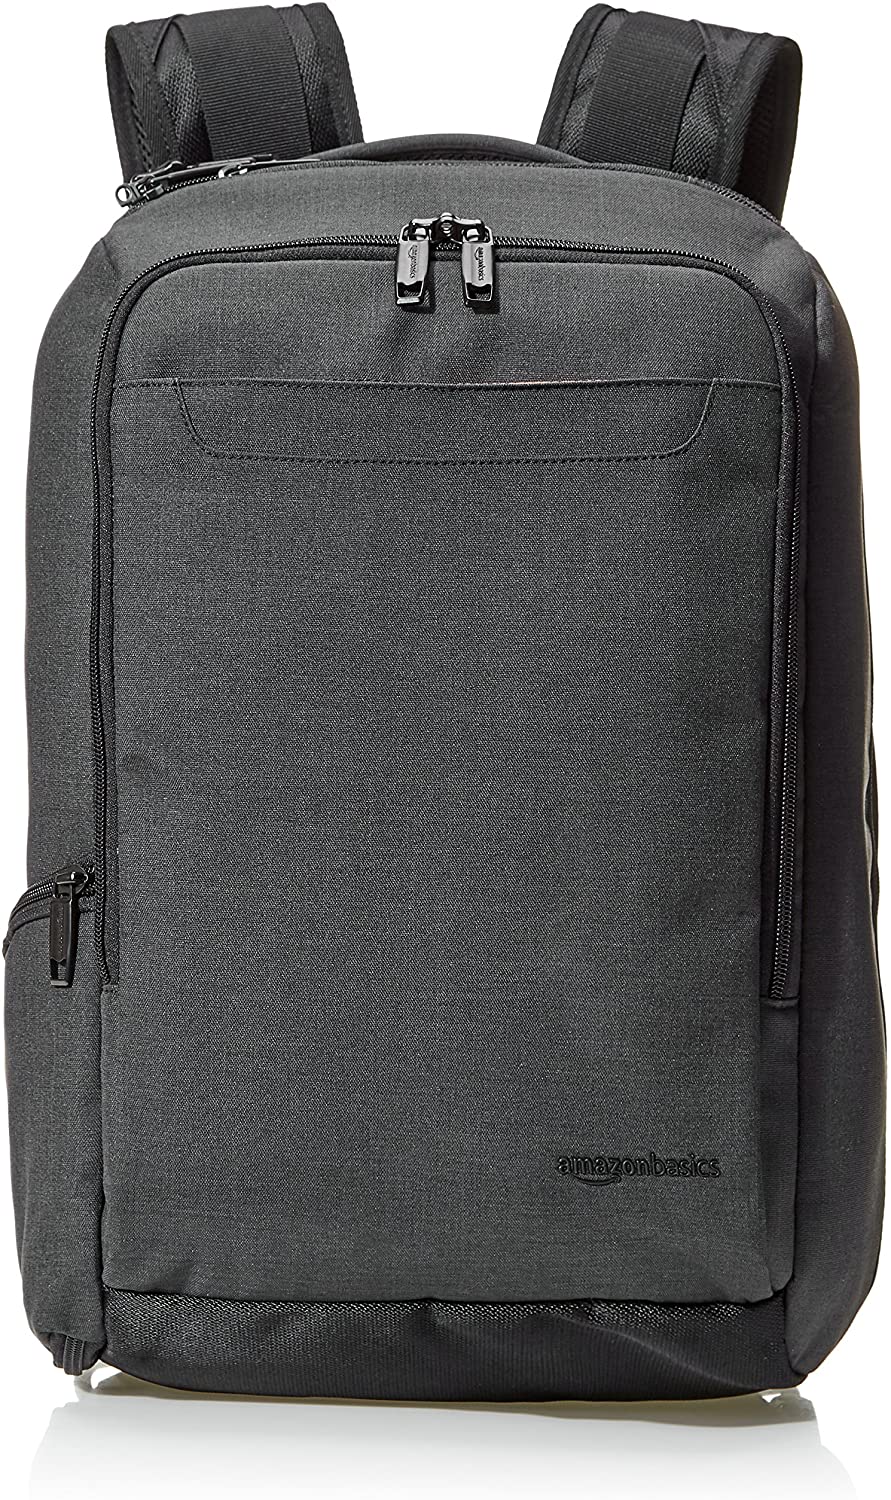 Amazon Basics Slim Carry On Laptop Travel Overnight Backpack